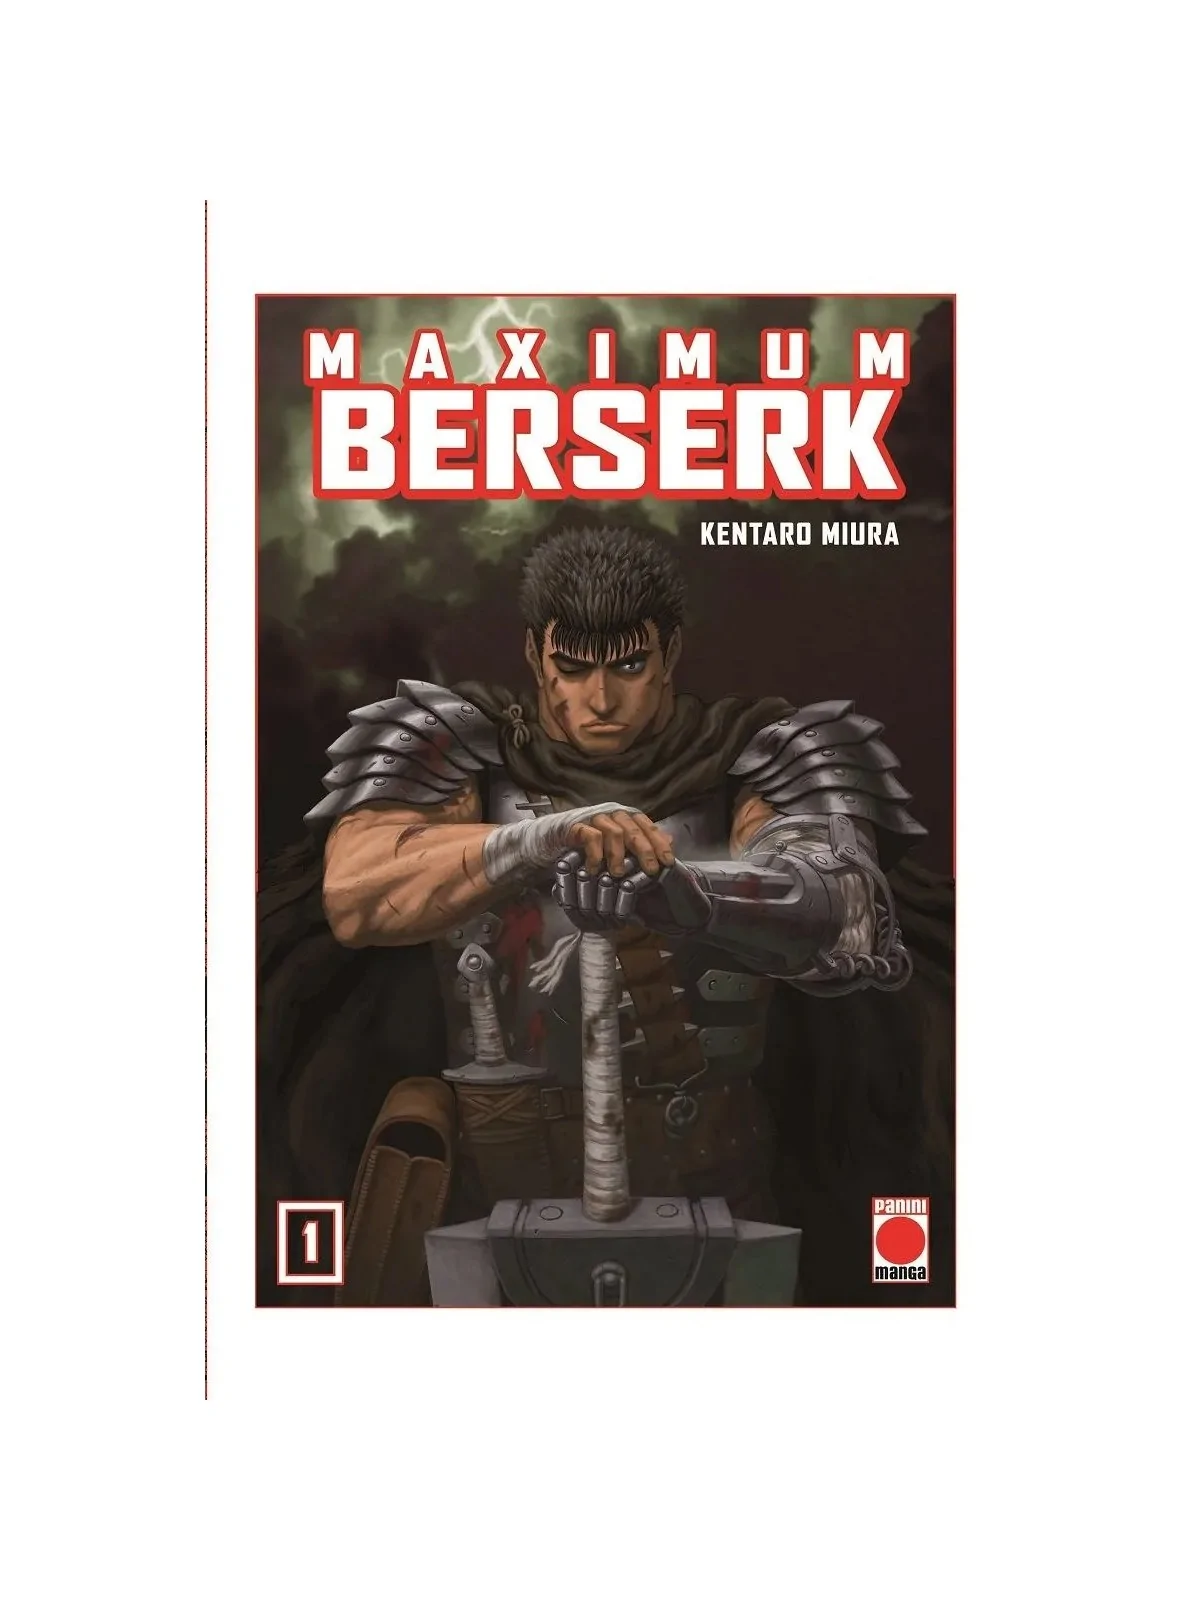 Comprar Maximum Berserk 01 barato al mejor precio 16,10 € de Panini Co